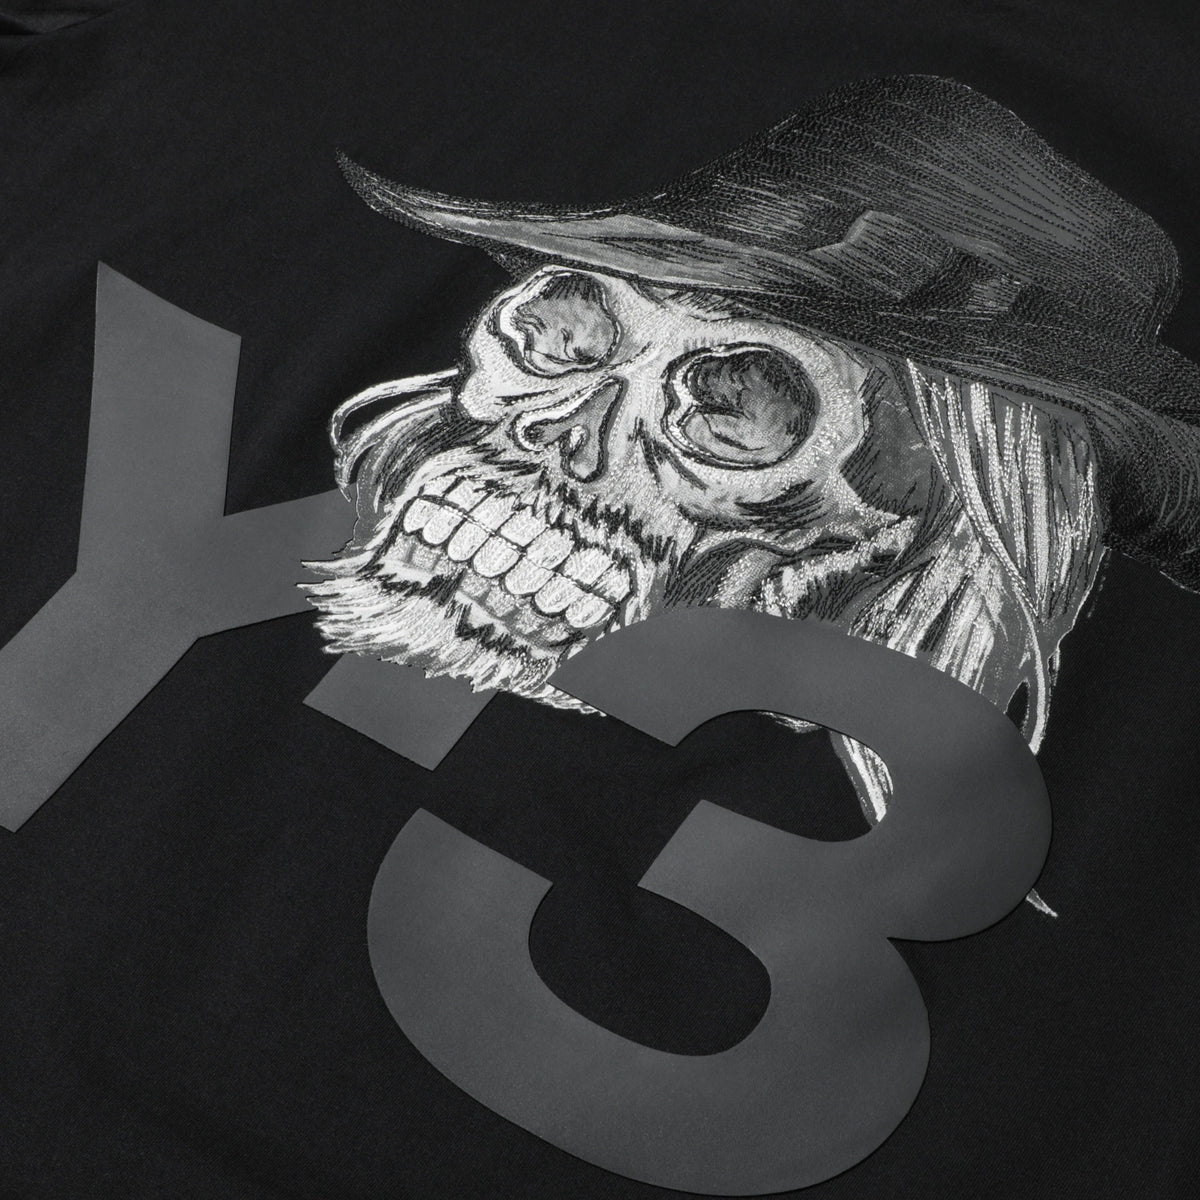 y3 skull t shirt